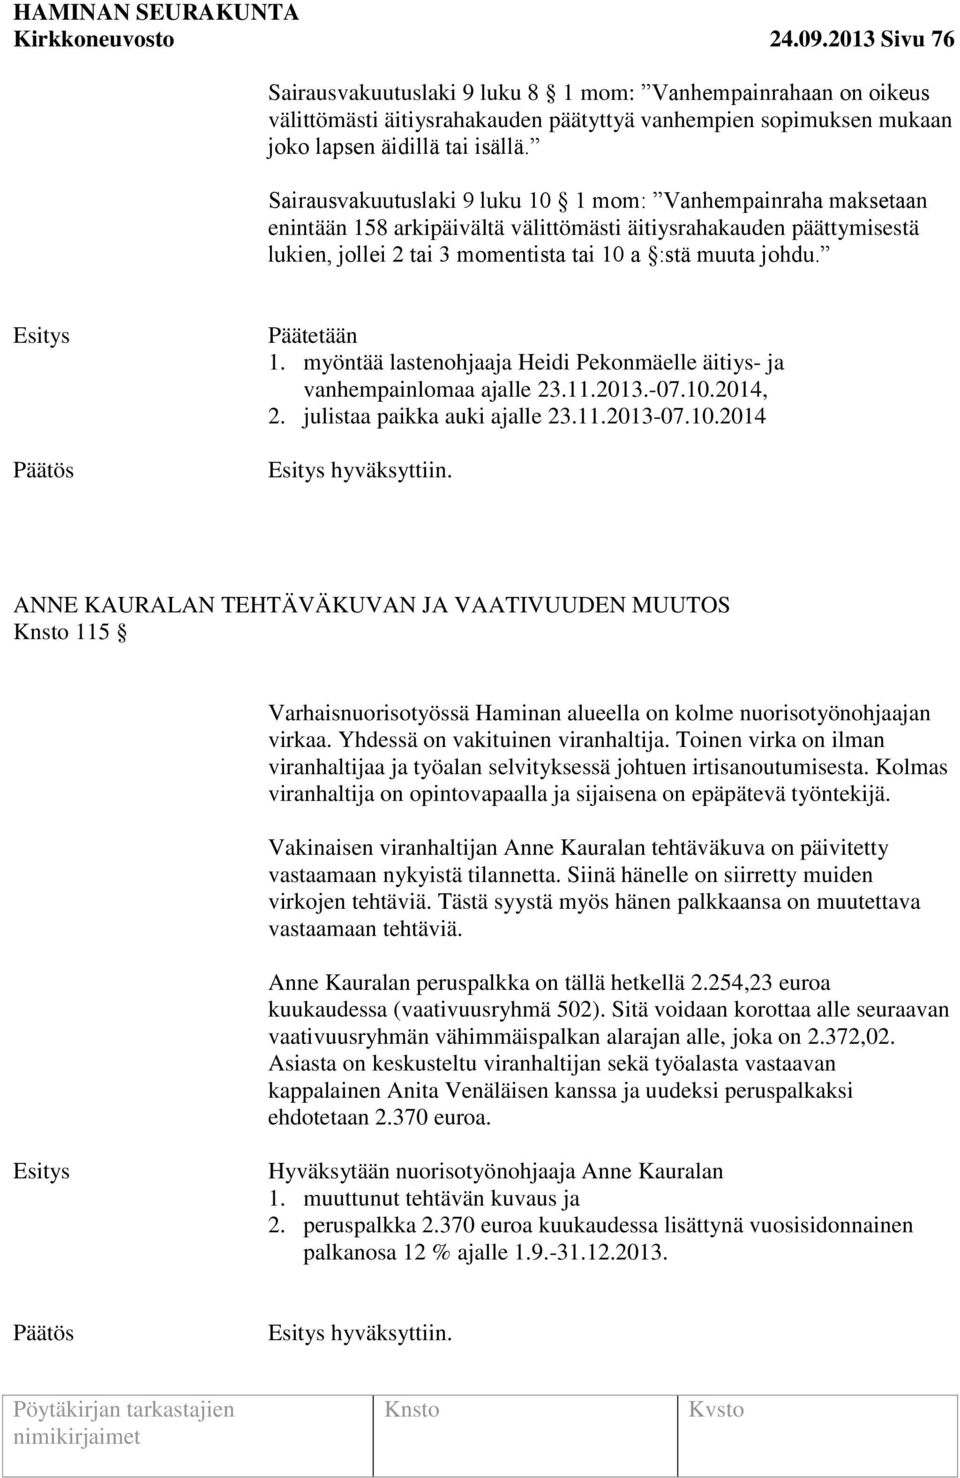 Päätetään 1. myöntää lastenohjaaja Heidi Pekonmäelle äitiys- ja vanhempainlomaa ajalle 23.11.2013.-07.10.2014, 2. julistaa paikka auki ajalle 23.11.2013-07.10.2014 hyväksyttiin.